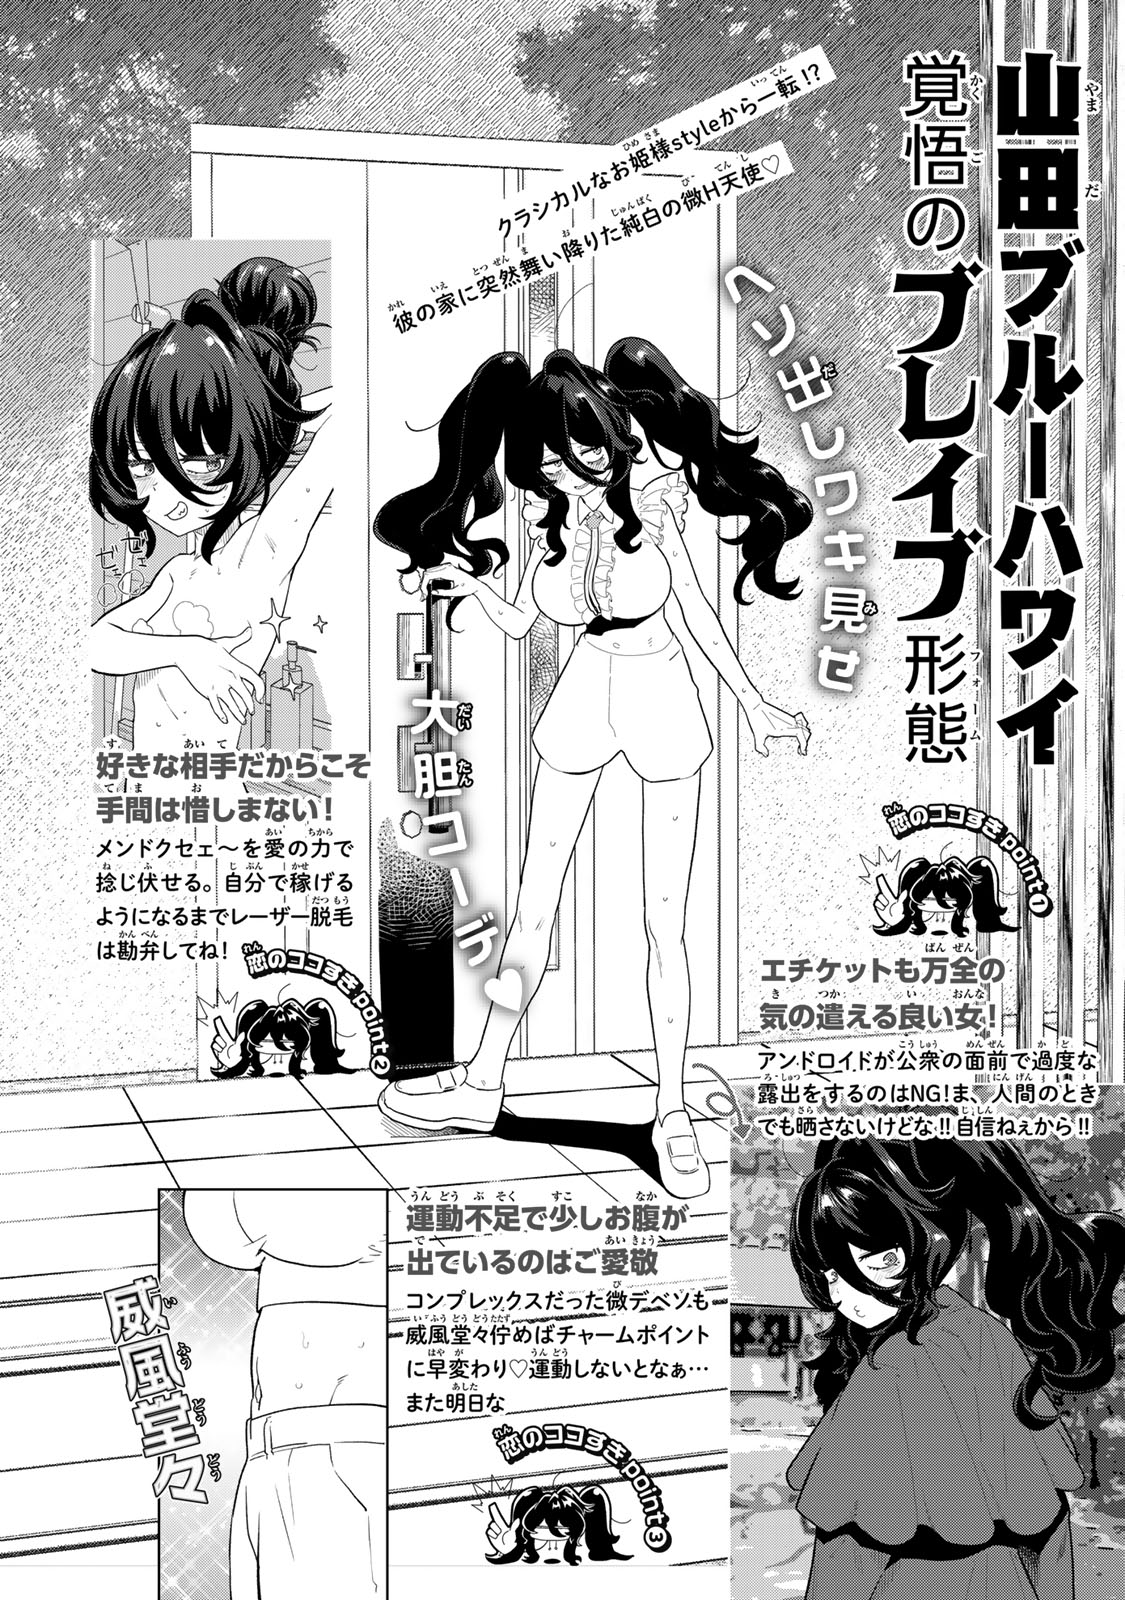 Yappa Ningen Yamete Seikai da wa - Chapter 2 - Page 11